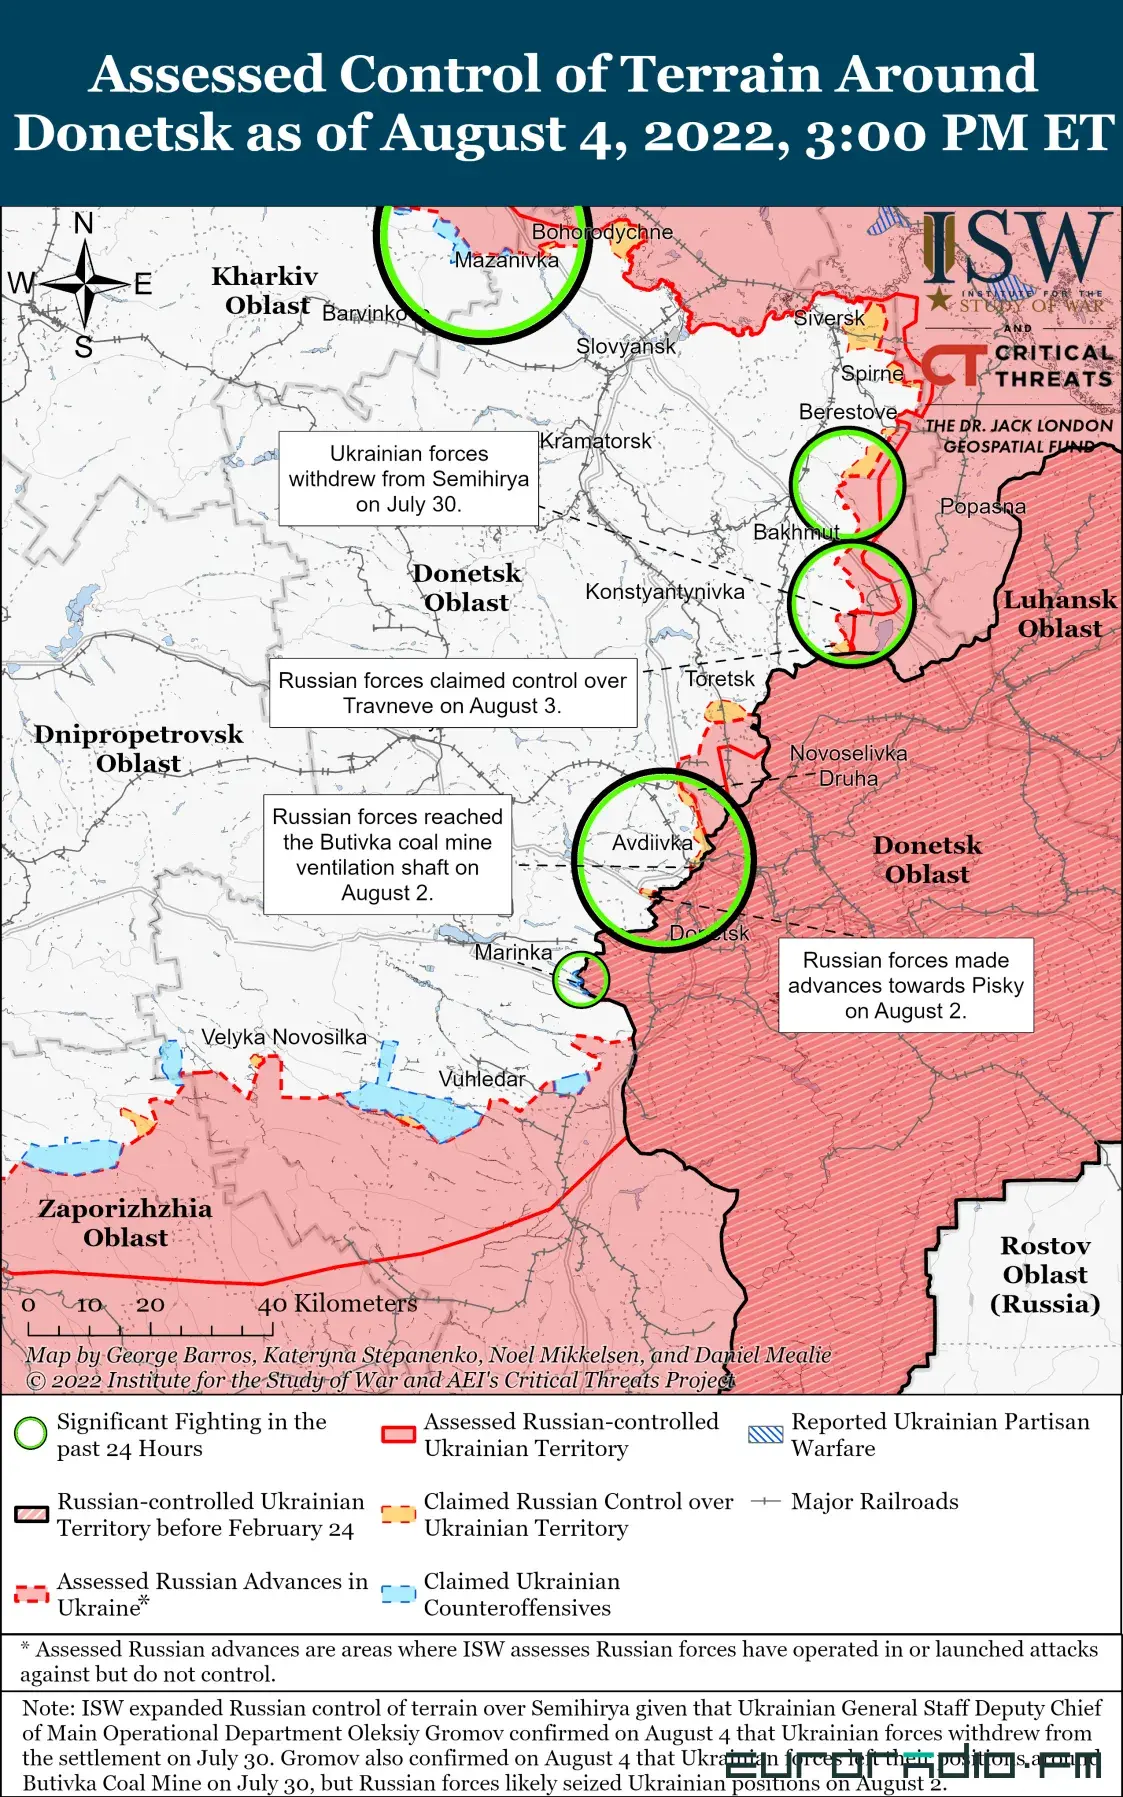 Украина, похоже, захватывает стратегическую инициативу — 163-е утро войны 